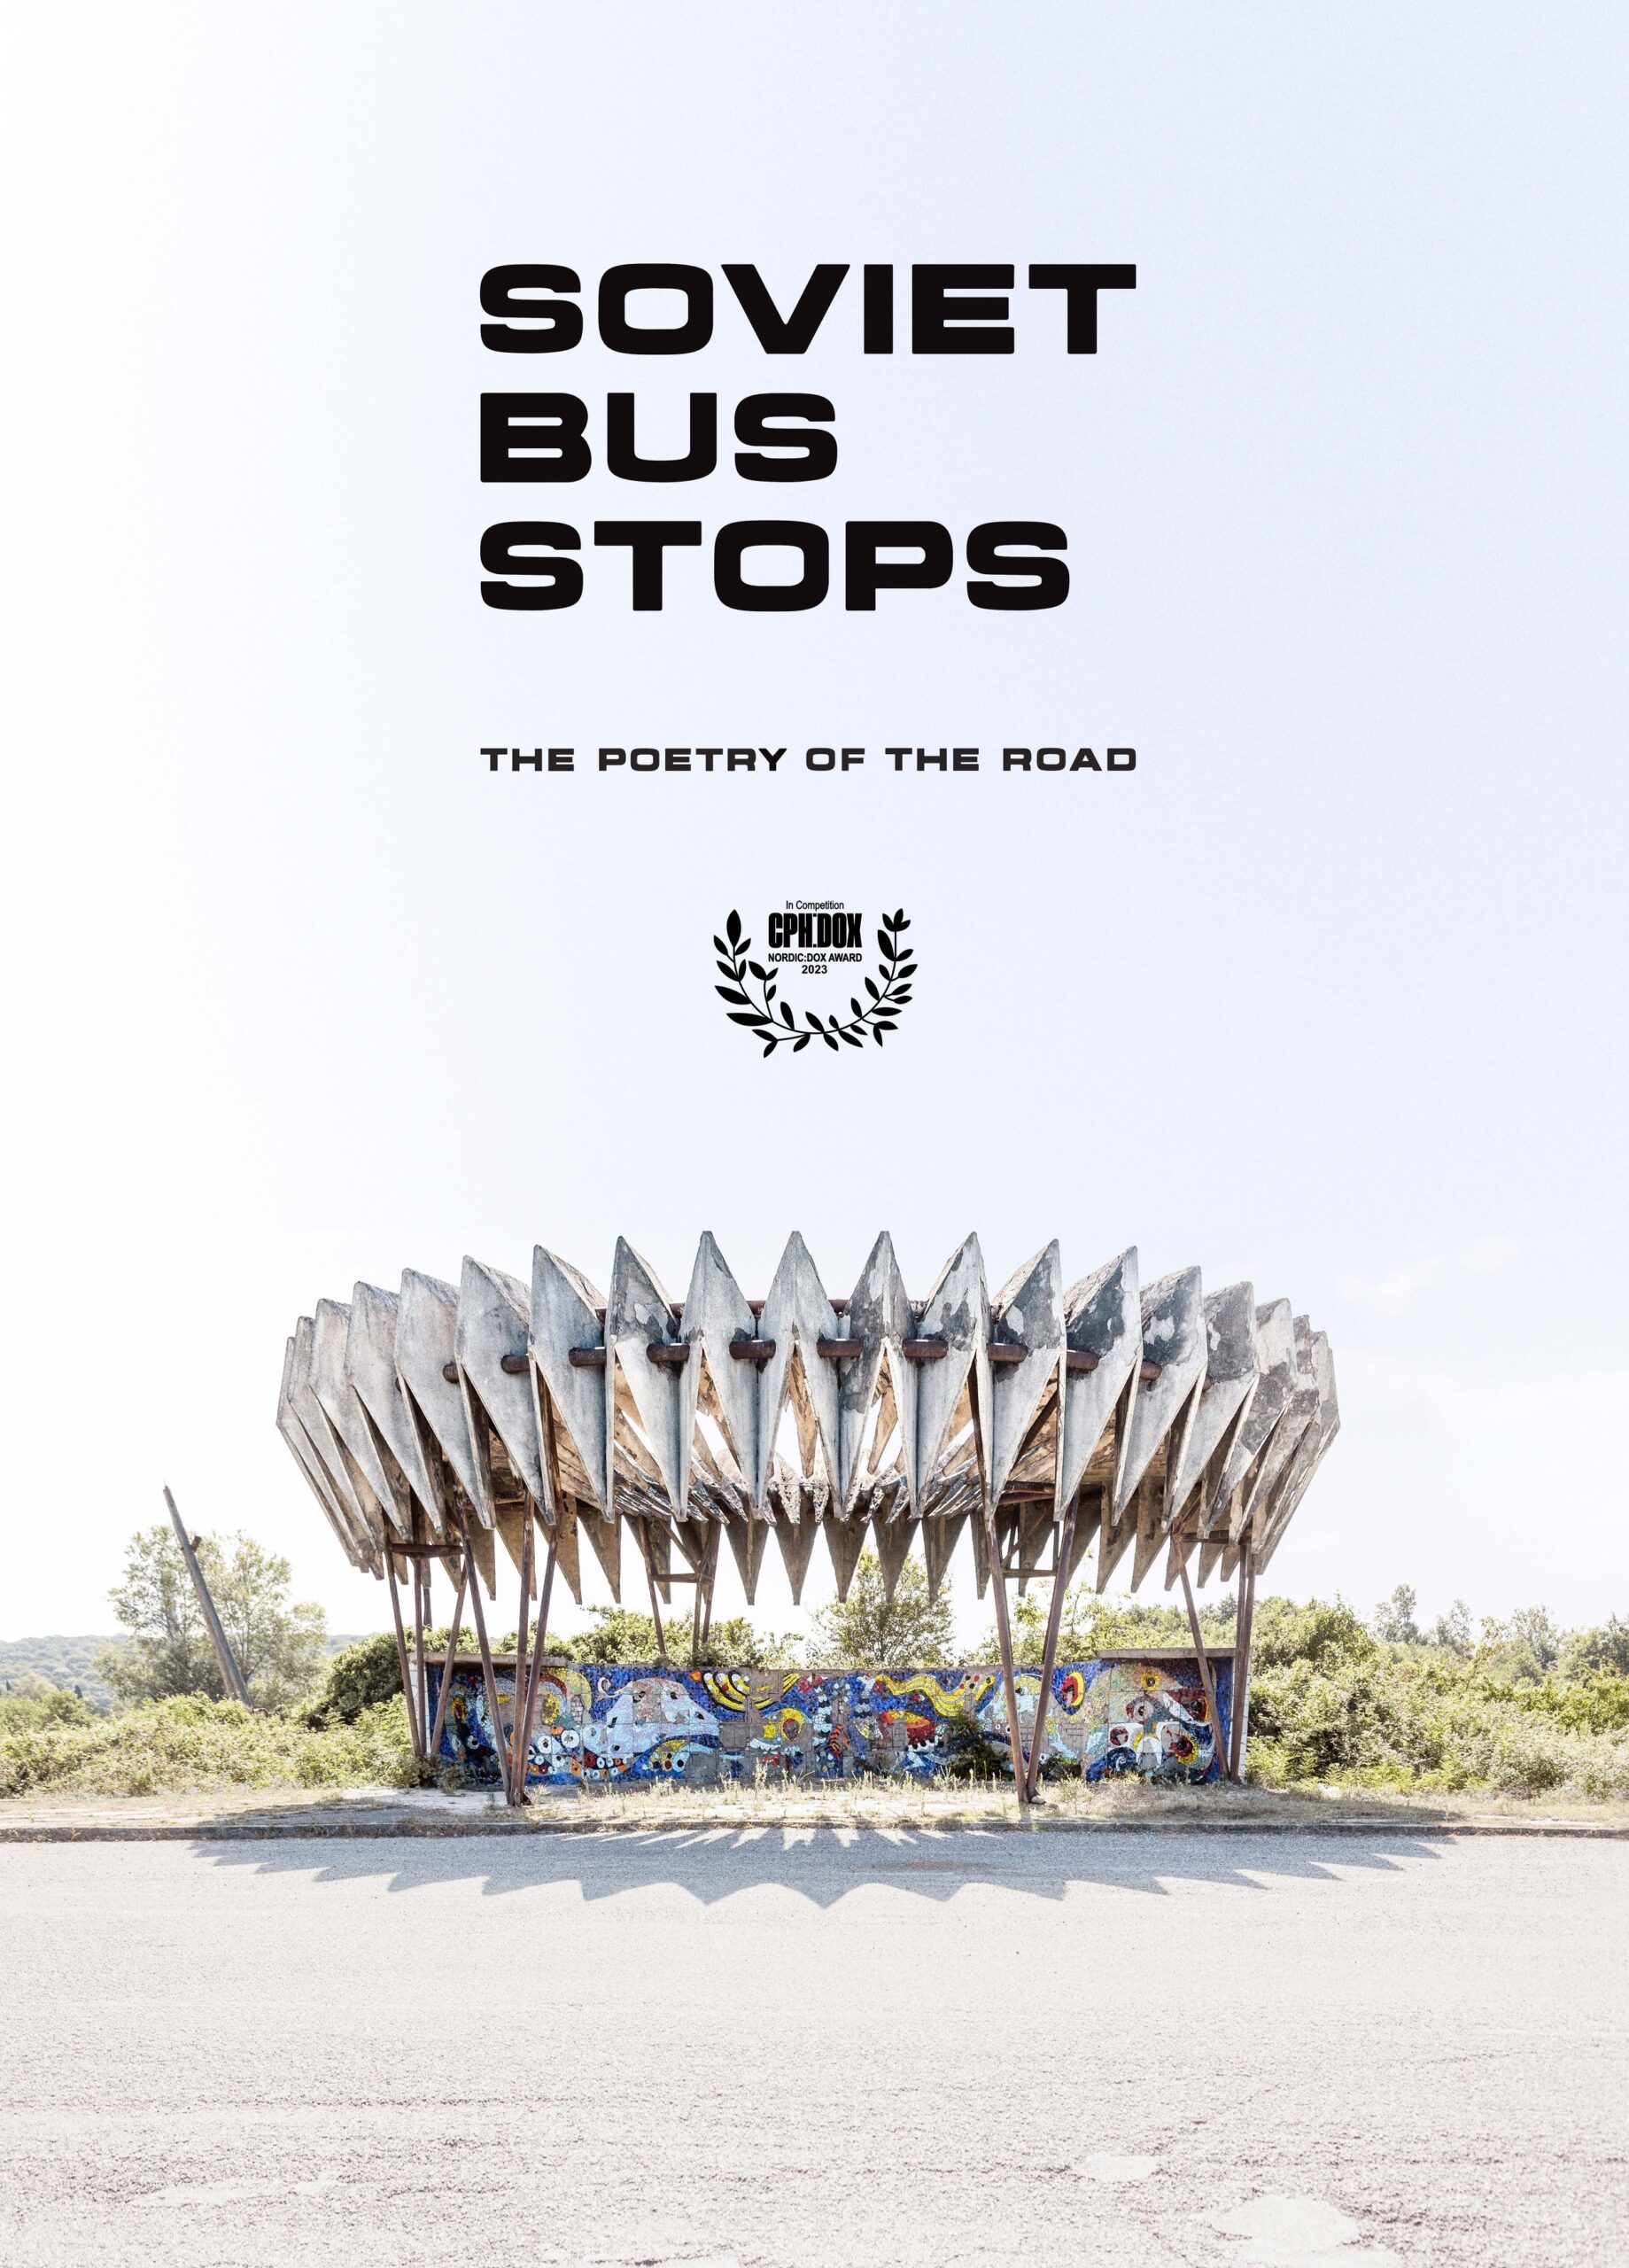 Soviet bus stops